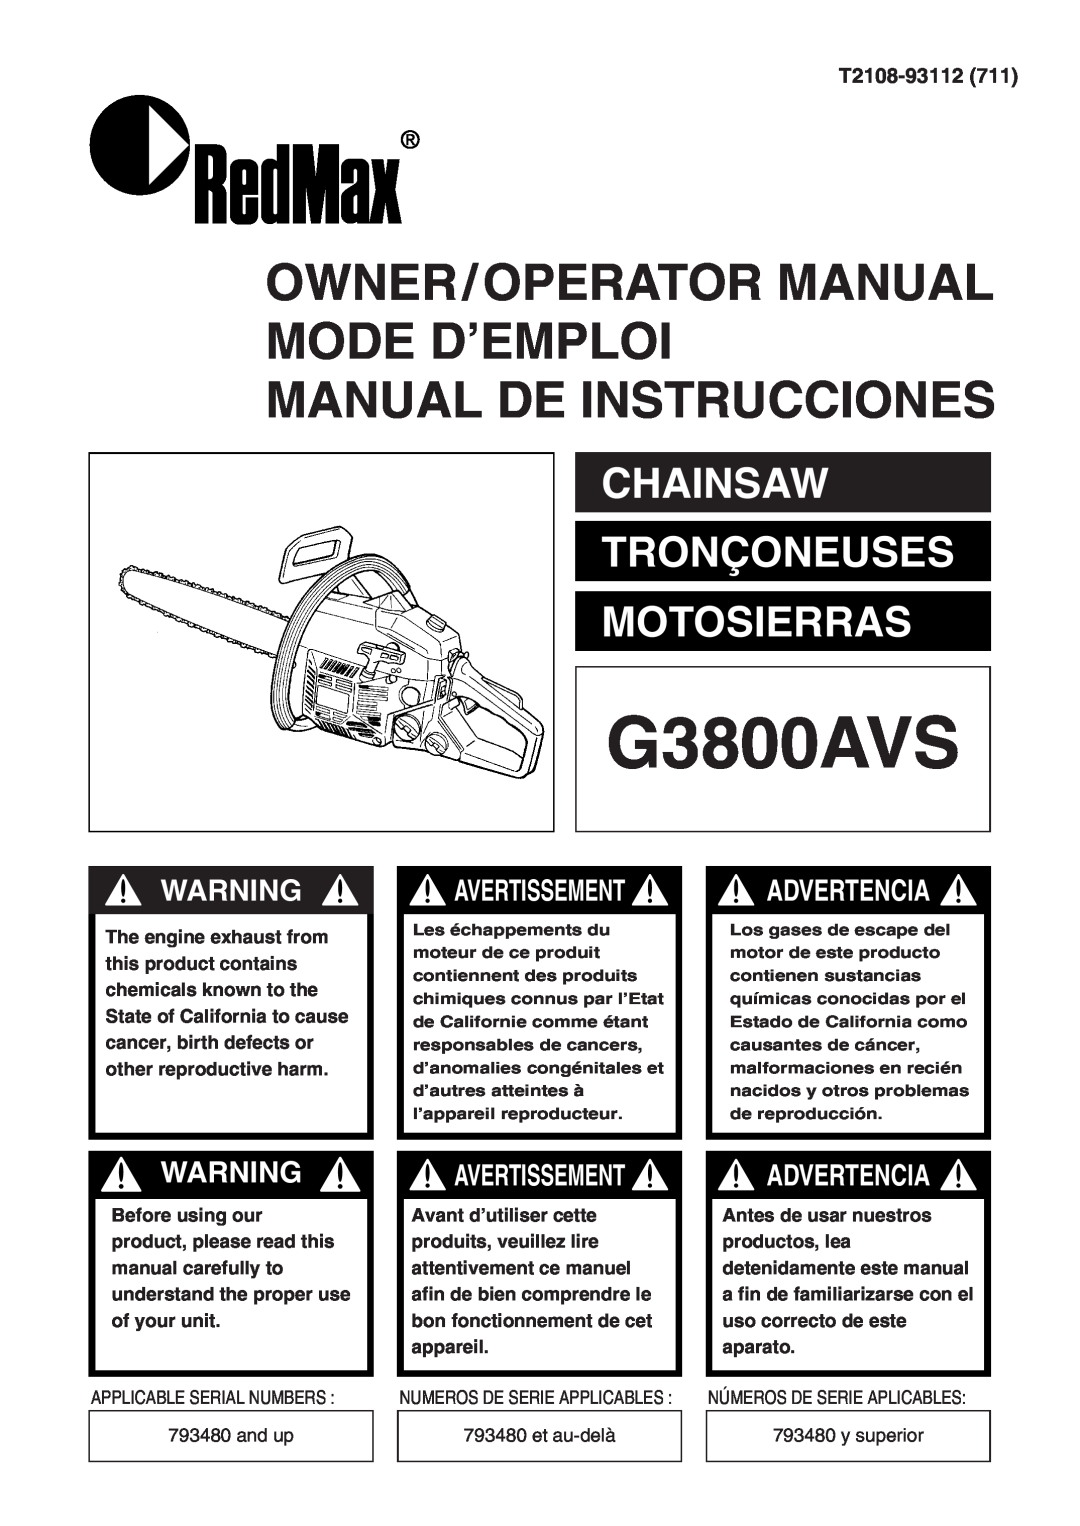 Zenoah G3800AVS manual T2108-93112711, Owner/Operator Manual Mode D’Emploi, Manual De Instrucciones, Advertencia 